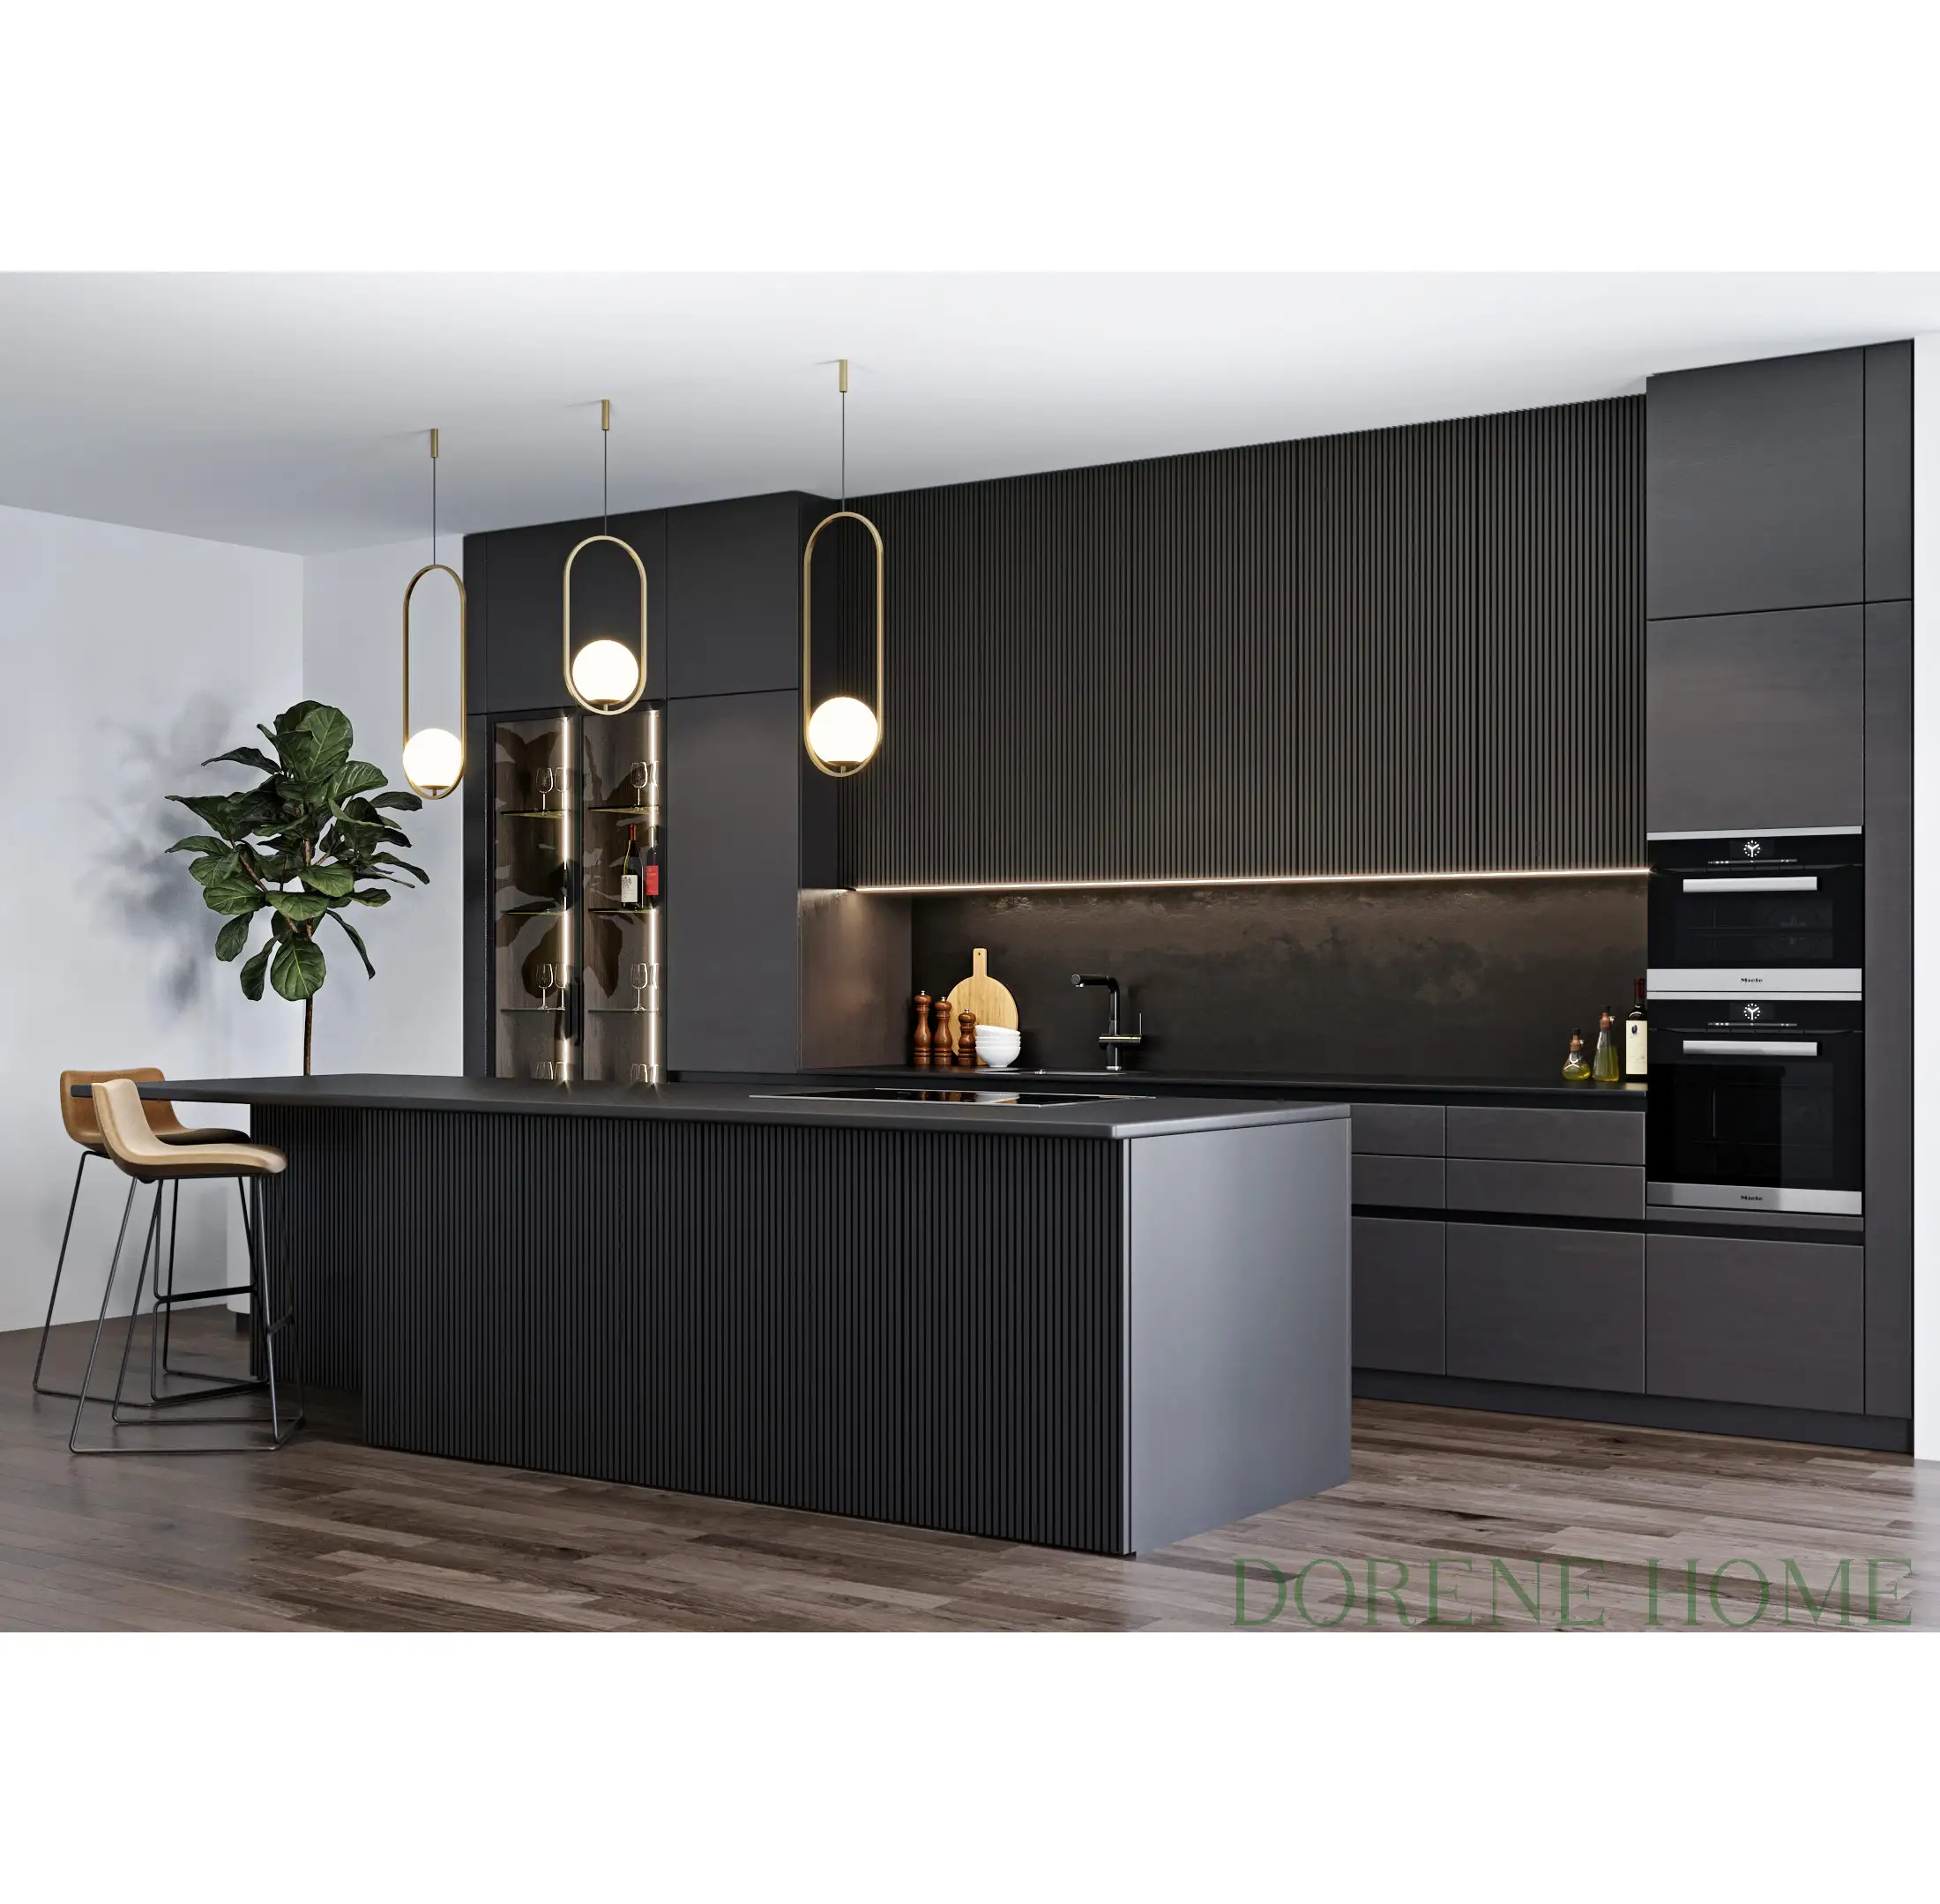 2023 Dorene Villa di lusso colore nero tedesco impiallacciatura di legno Design scanalato porta Design moderno mobili da cucina